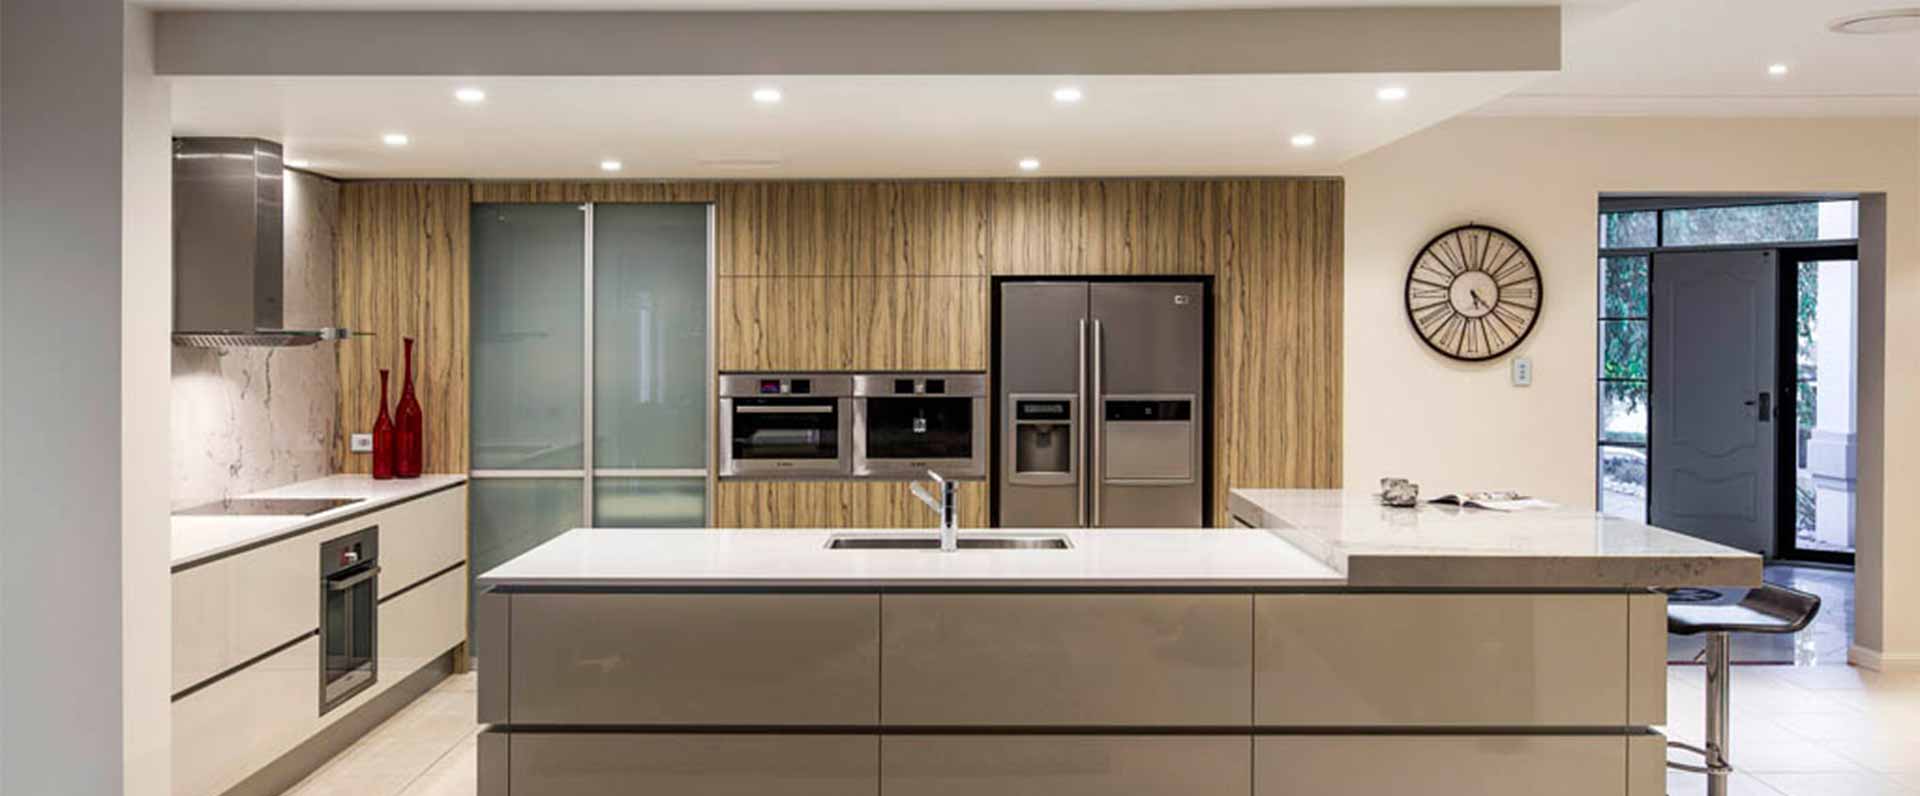  kitchen design sydney inner west